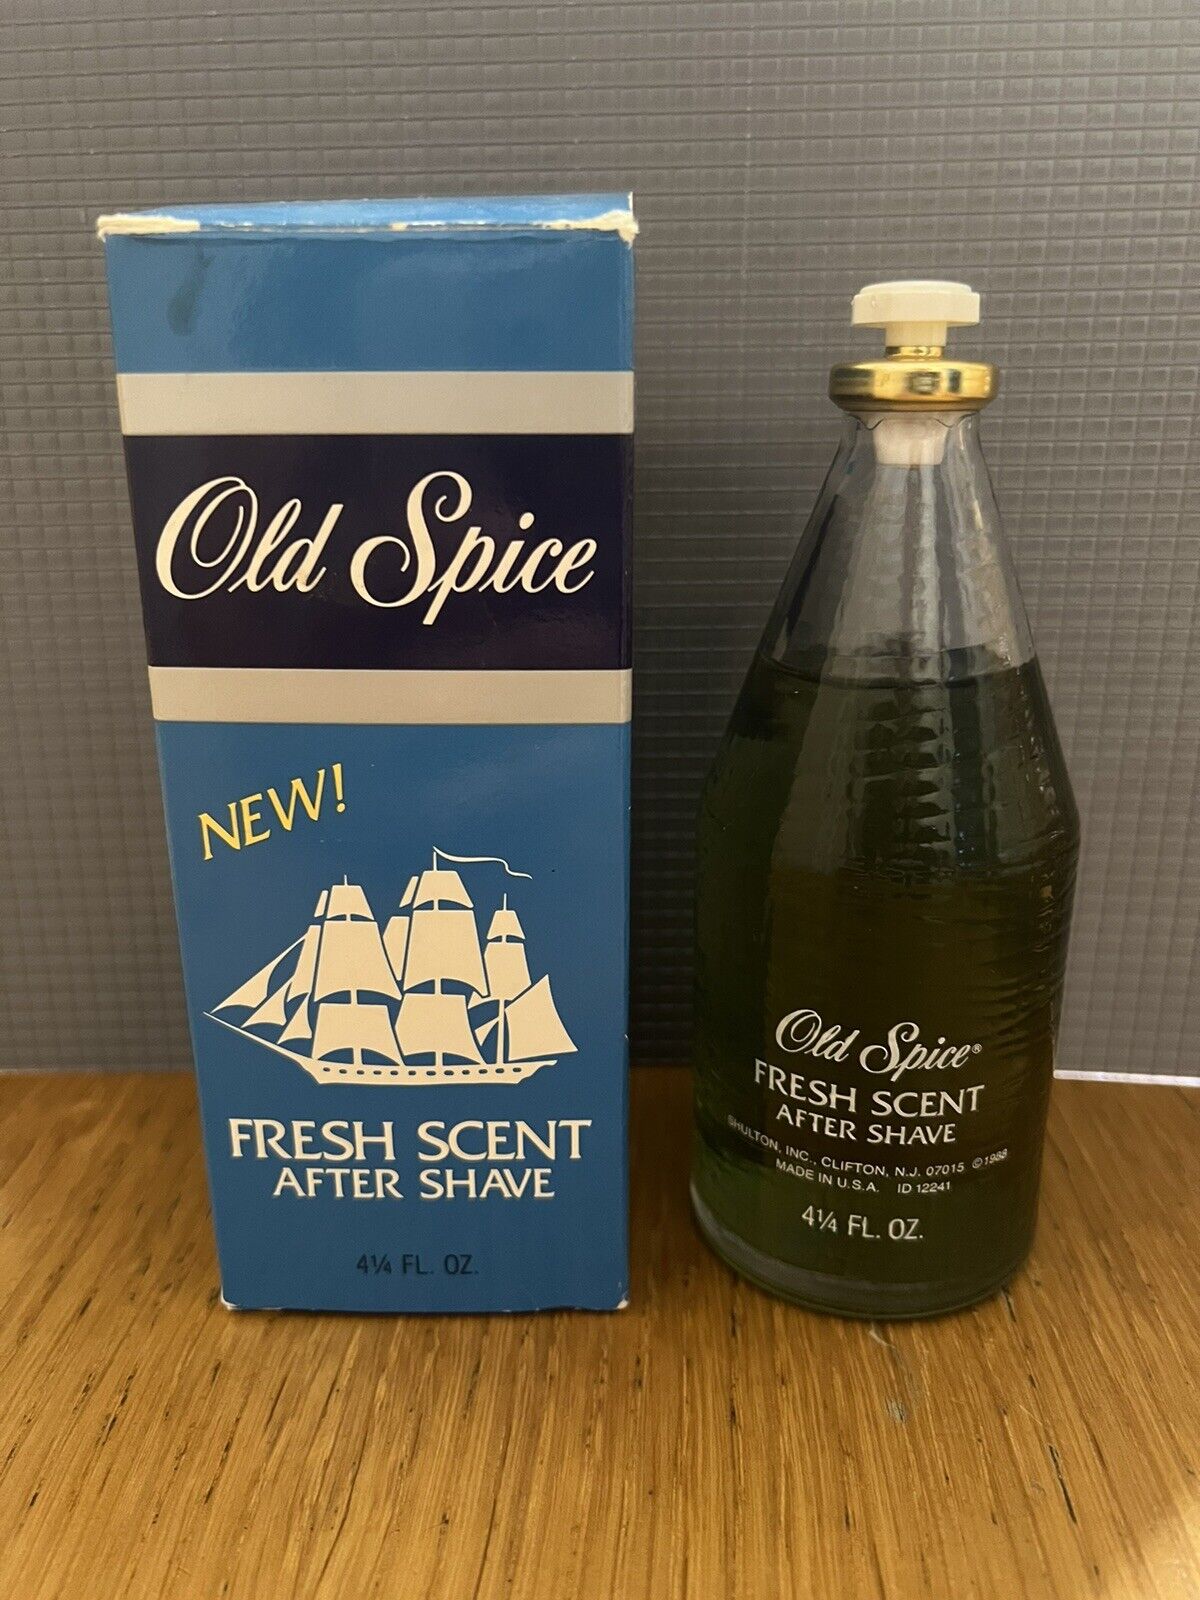 Old Spice, Fresh Scent after shave original vintage 1988